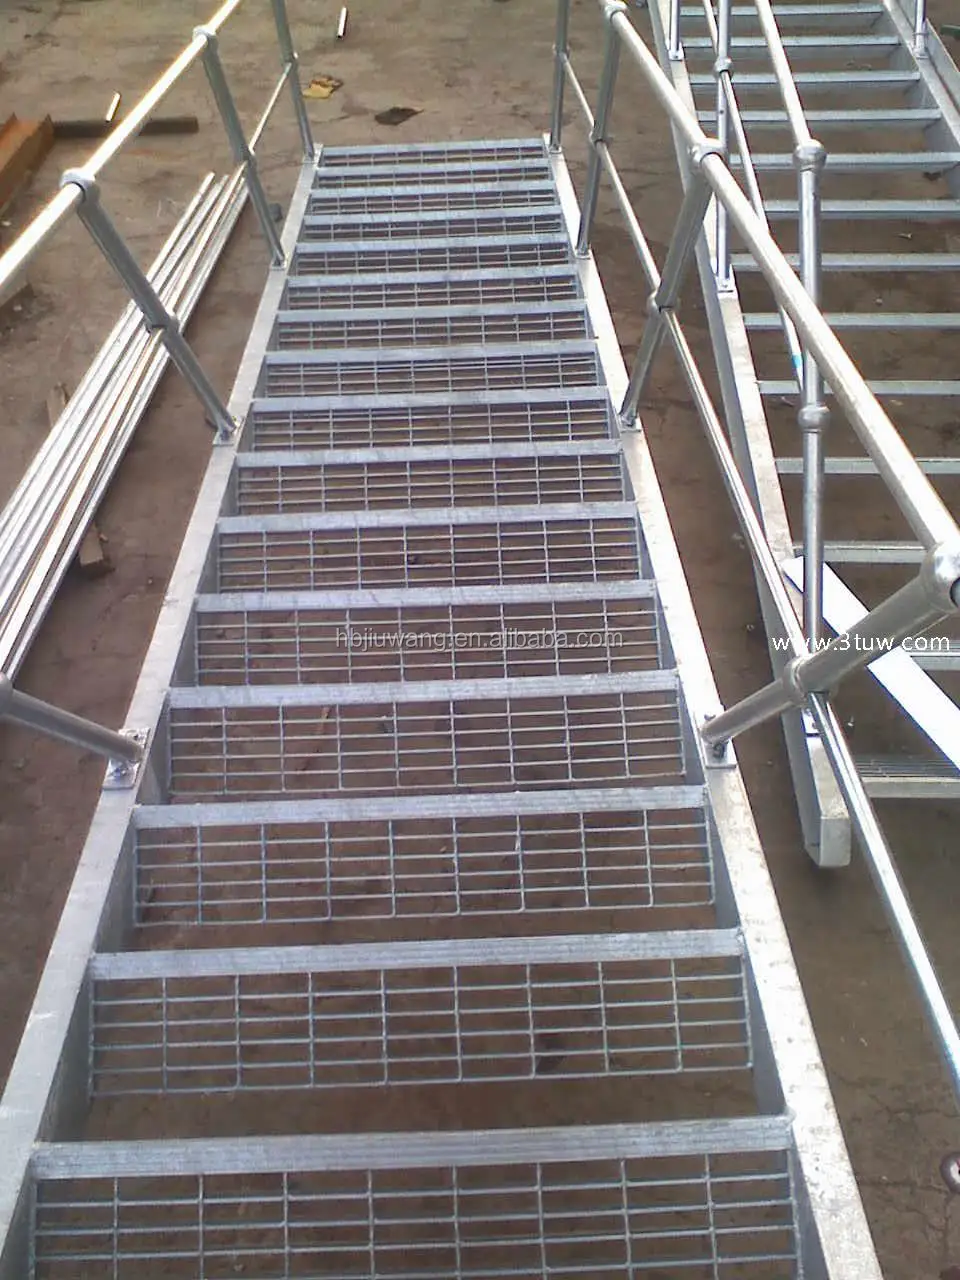 лестница решетка фото